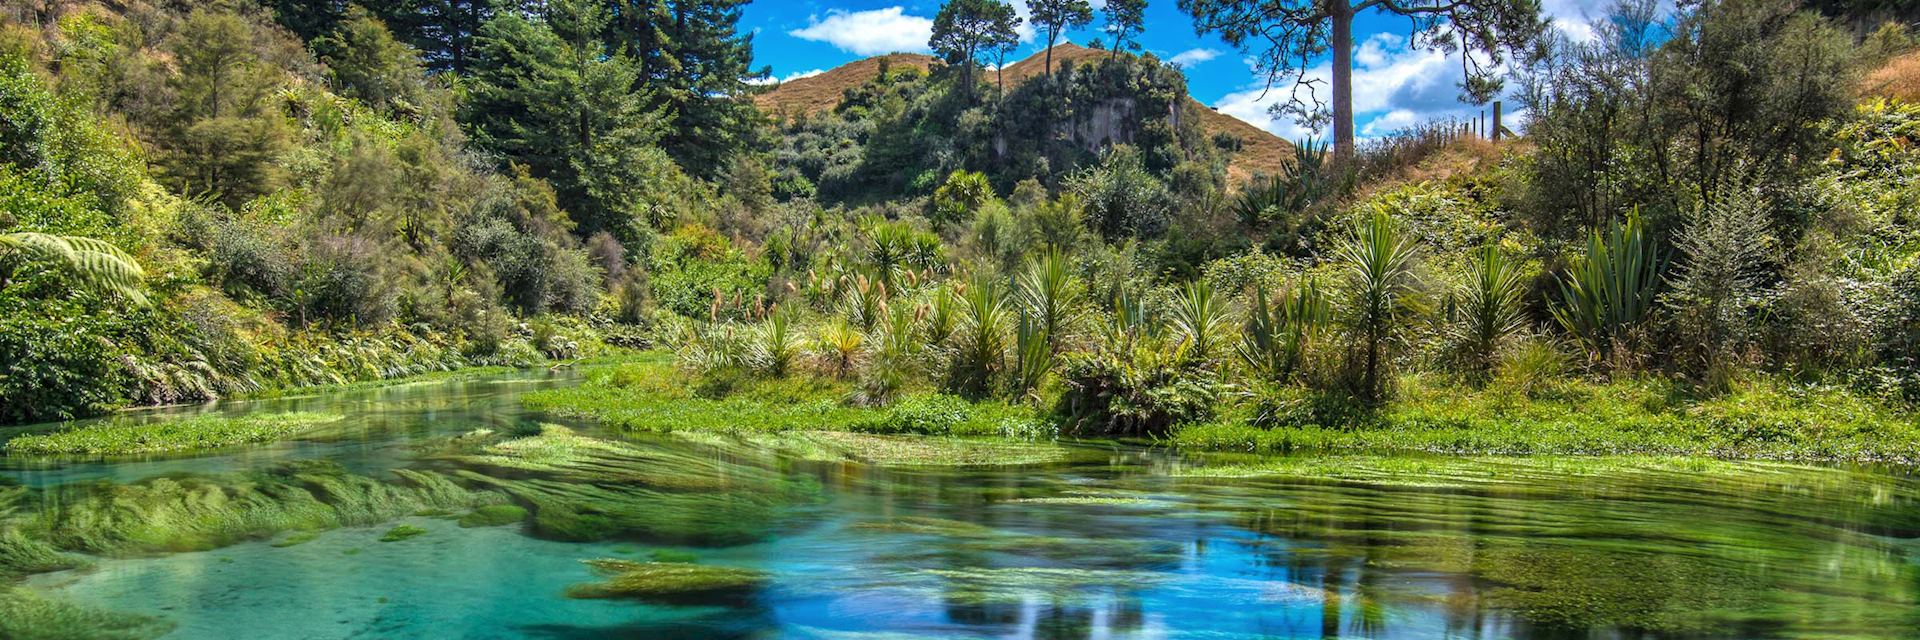 Waikato region, New Zealand